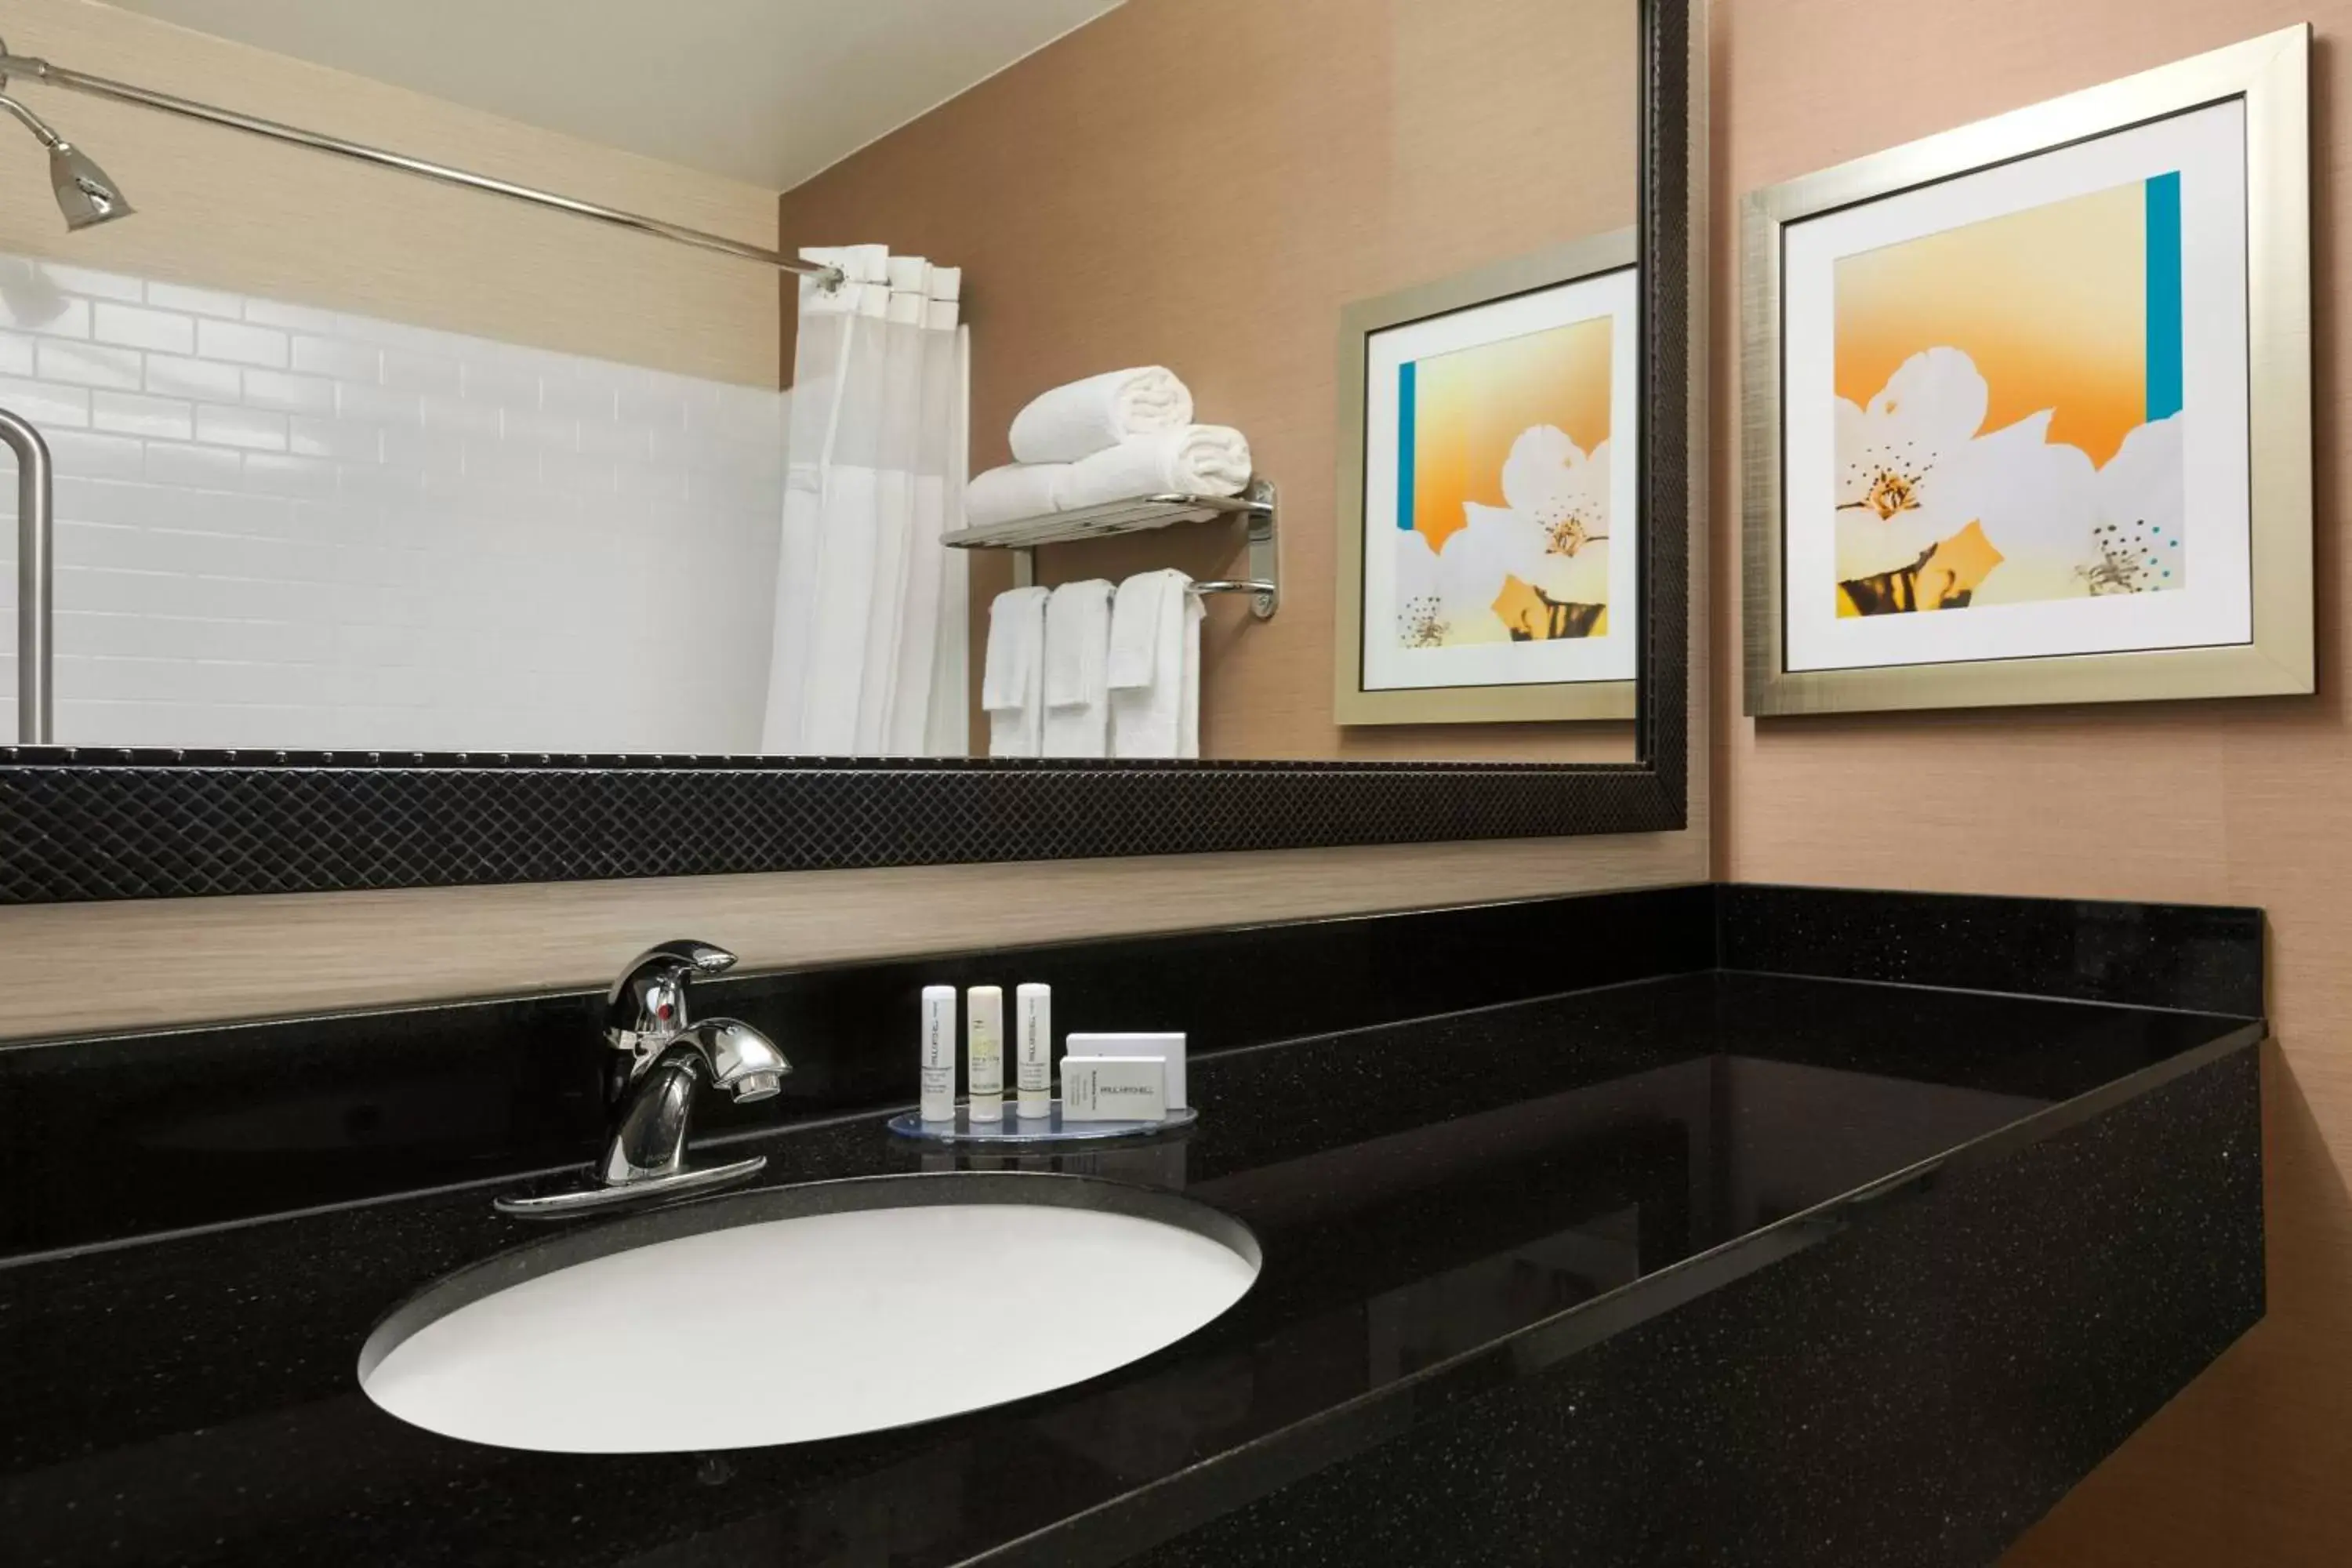 Bathroom in Fairfield Inn & Suites Omaha East/Council Bluffs, IA